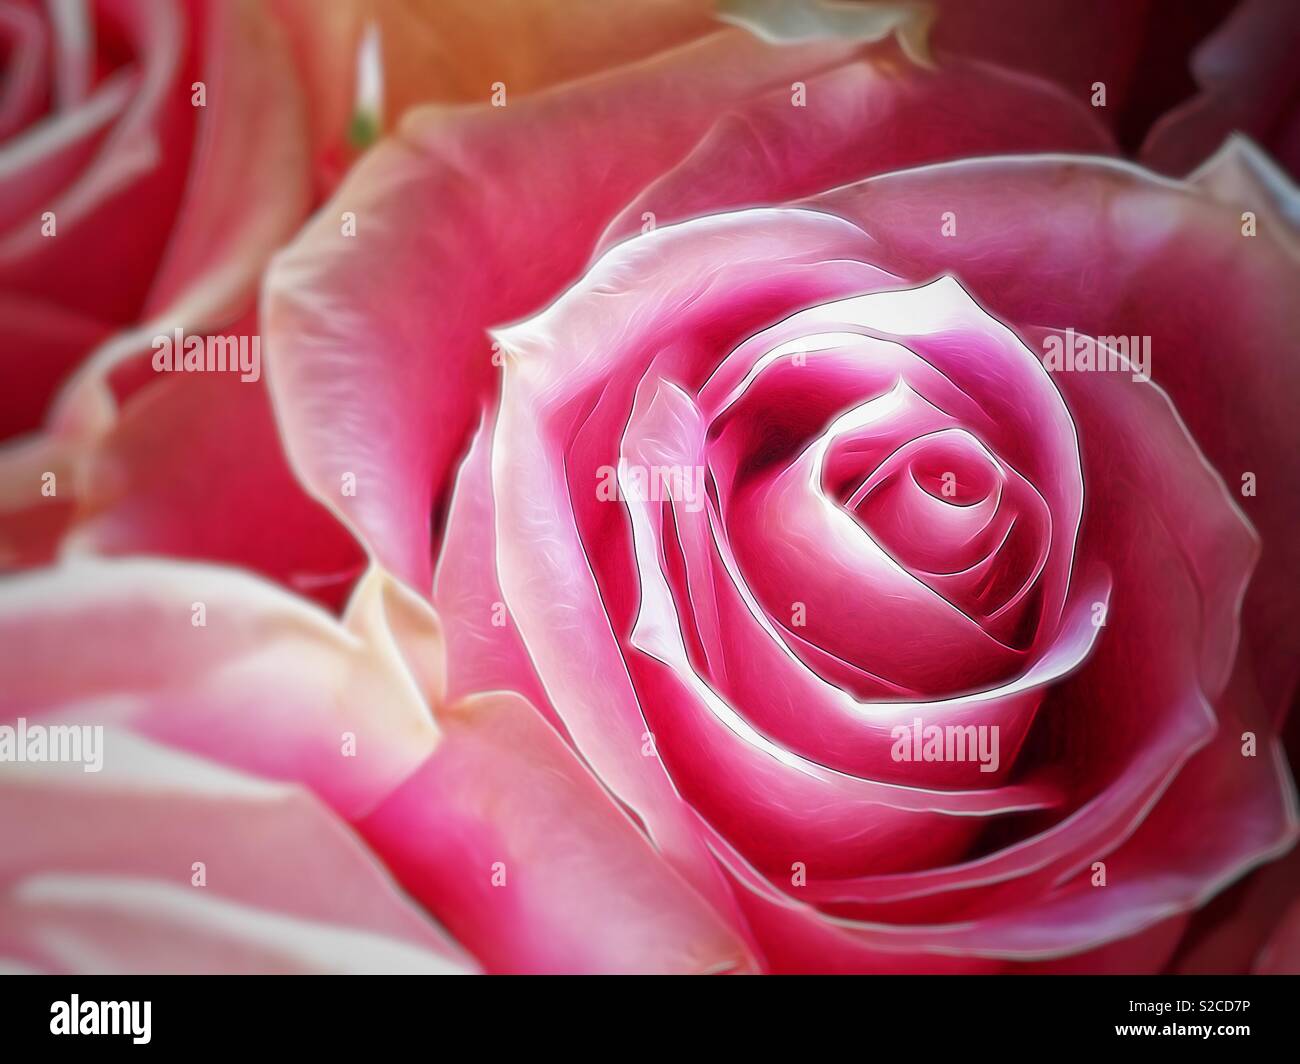 Closeup of a hot pink rose Stock Photo